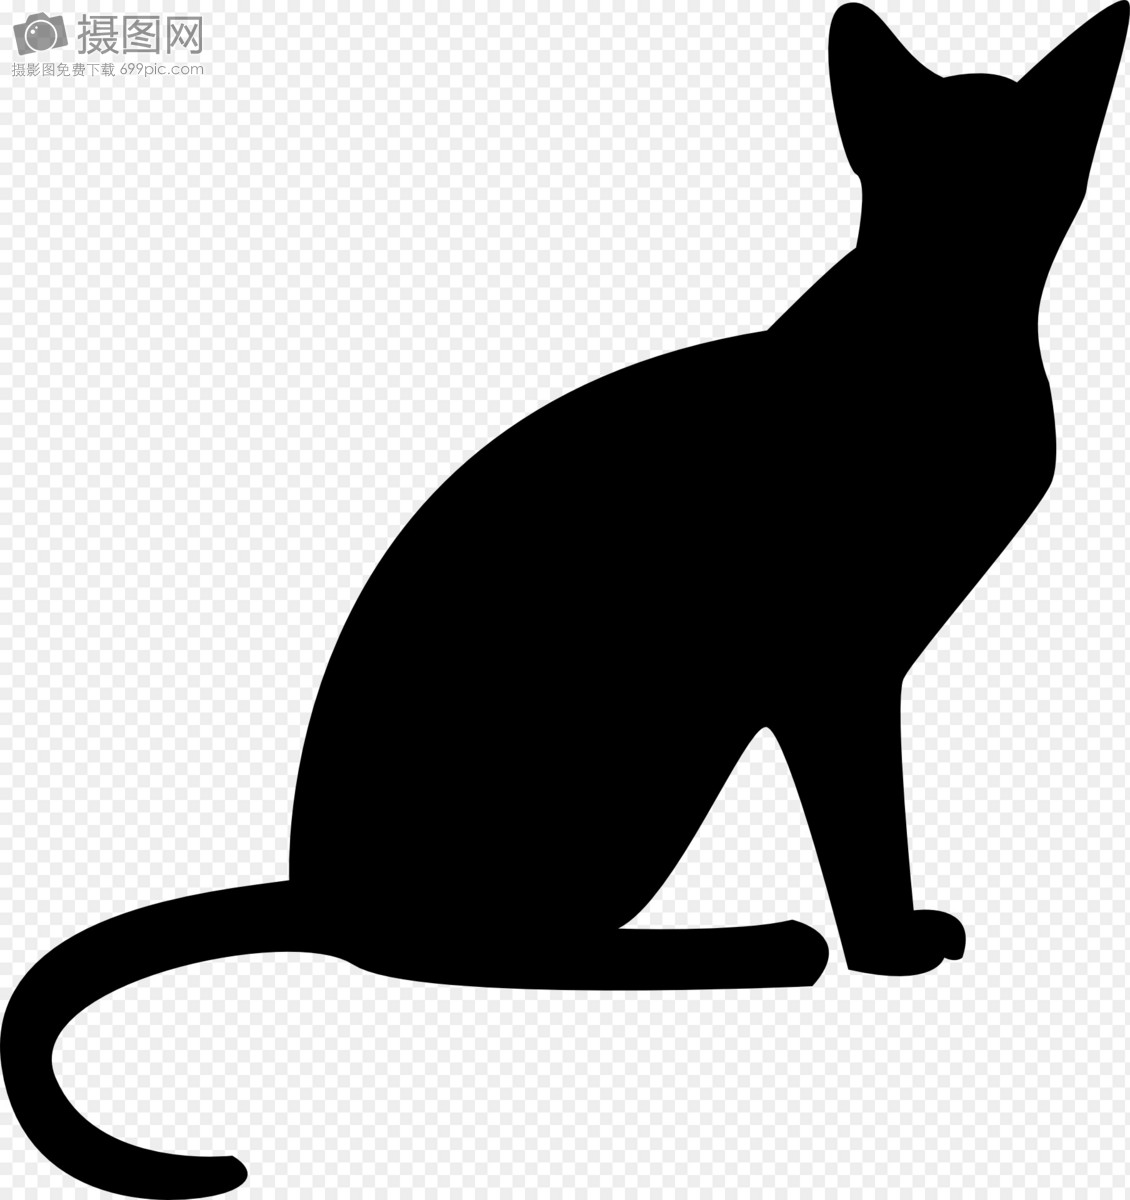 一只卡通猫坐着的创意贴纸 向量例证. 插画 包括有 贴纸, 字符, 逗人喜爱, 开会, 图画, 宠物, 标签 - 151149440